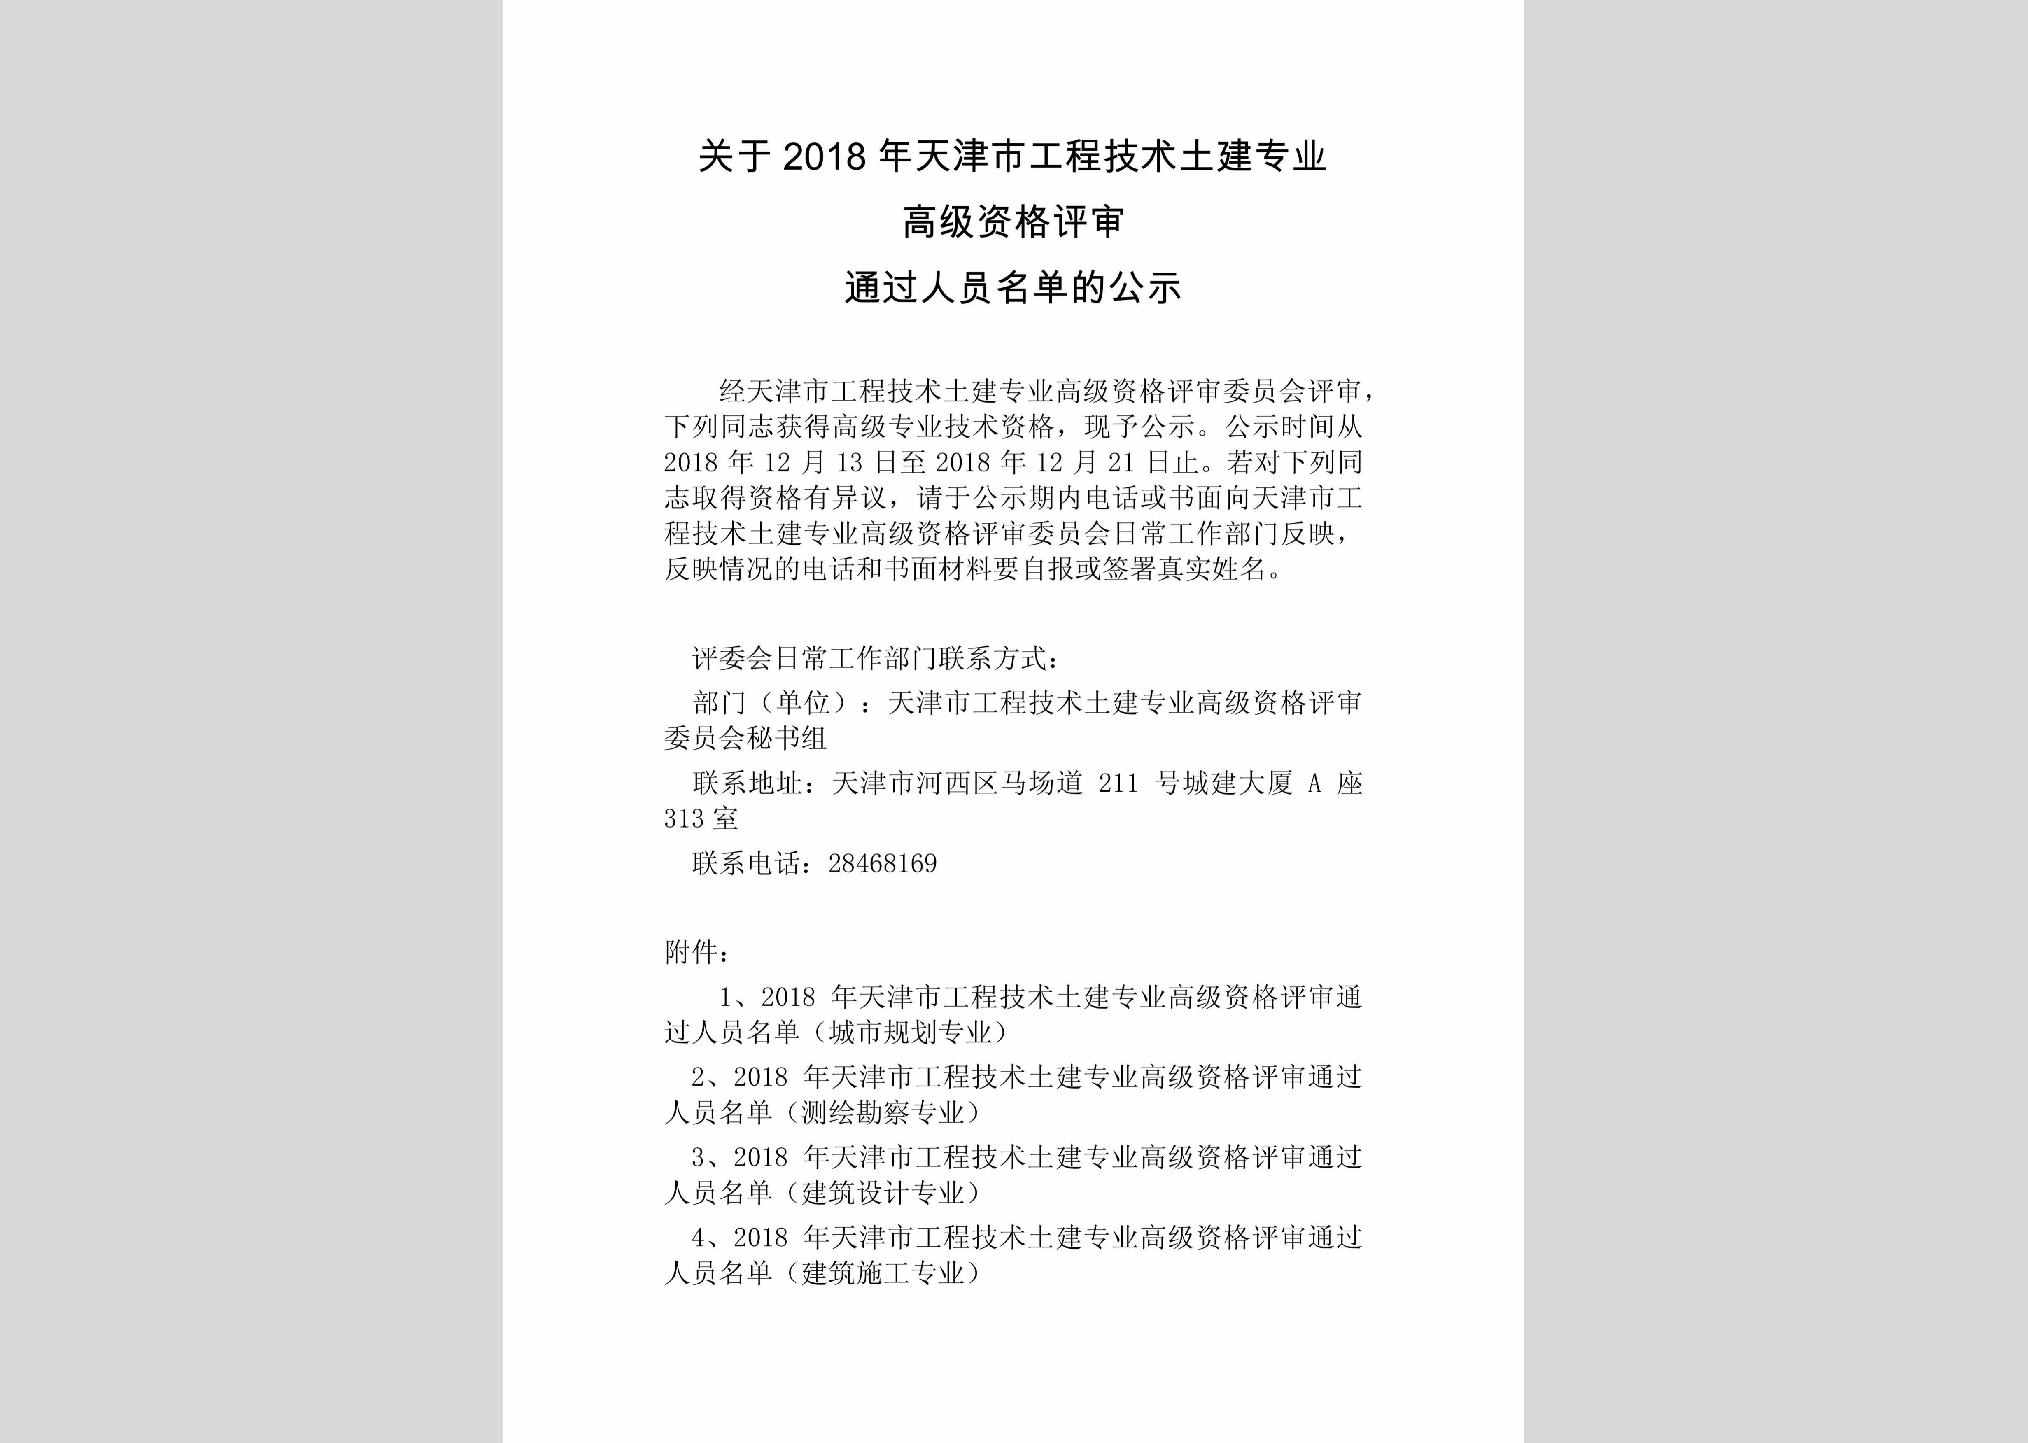 TJ-GCJSTJZY-2018：关于2018年天津市工程技术土建专业高级资格评审通过人员名单的公示